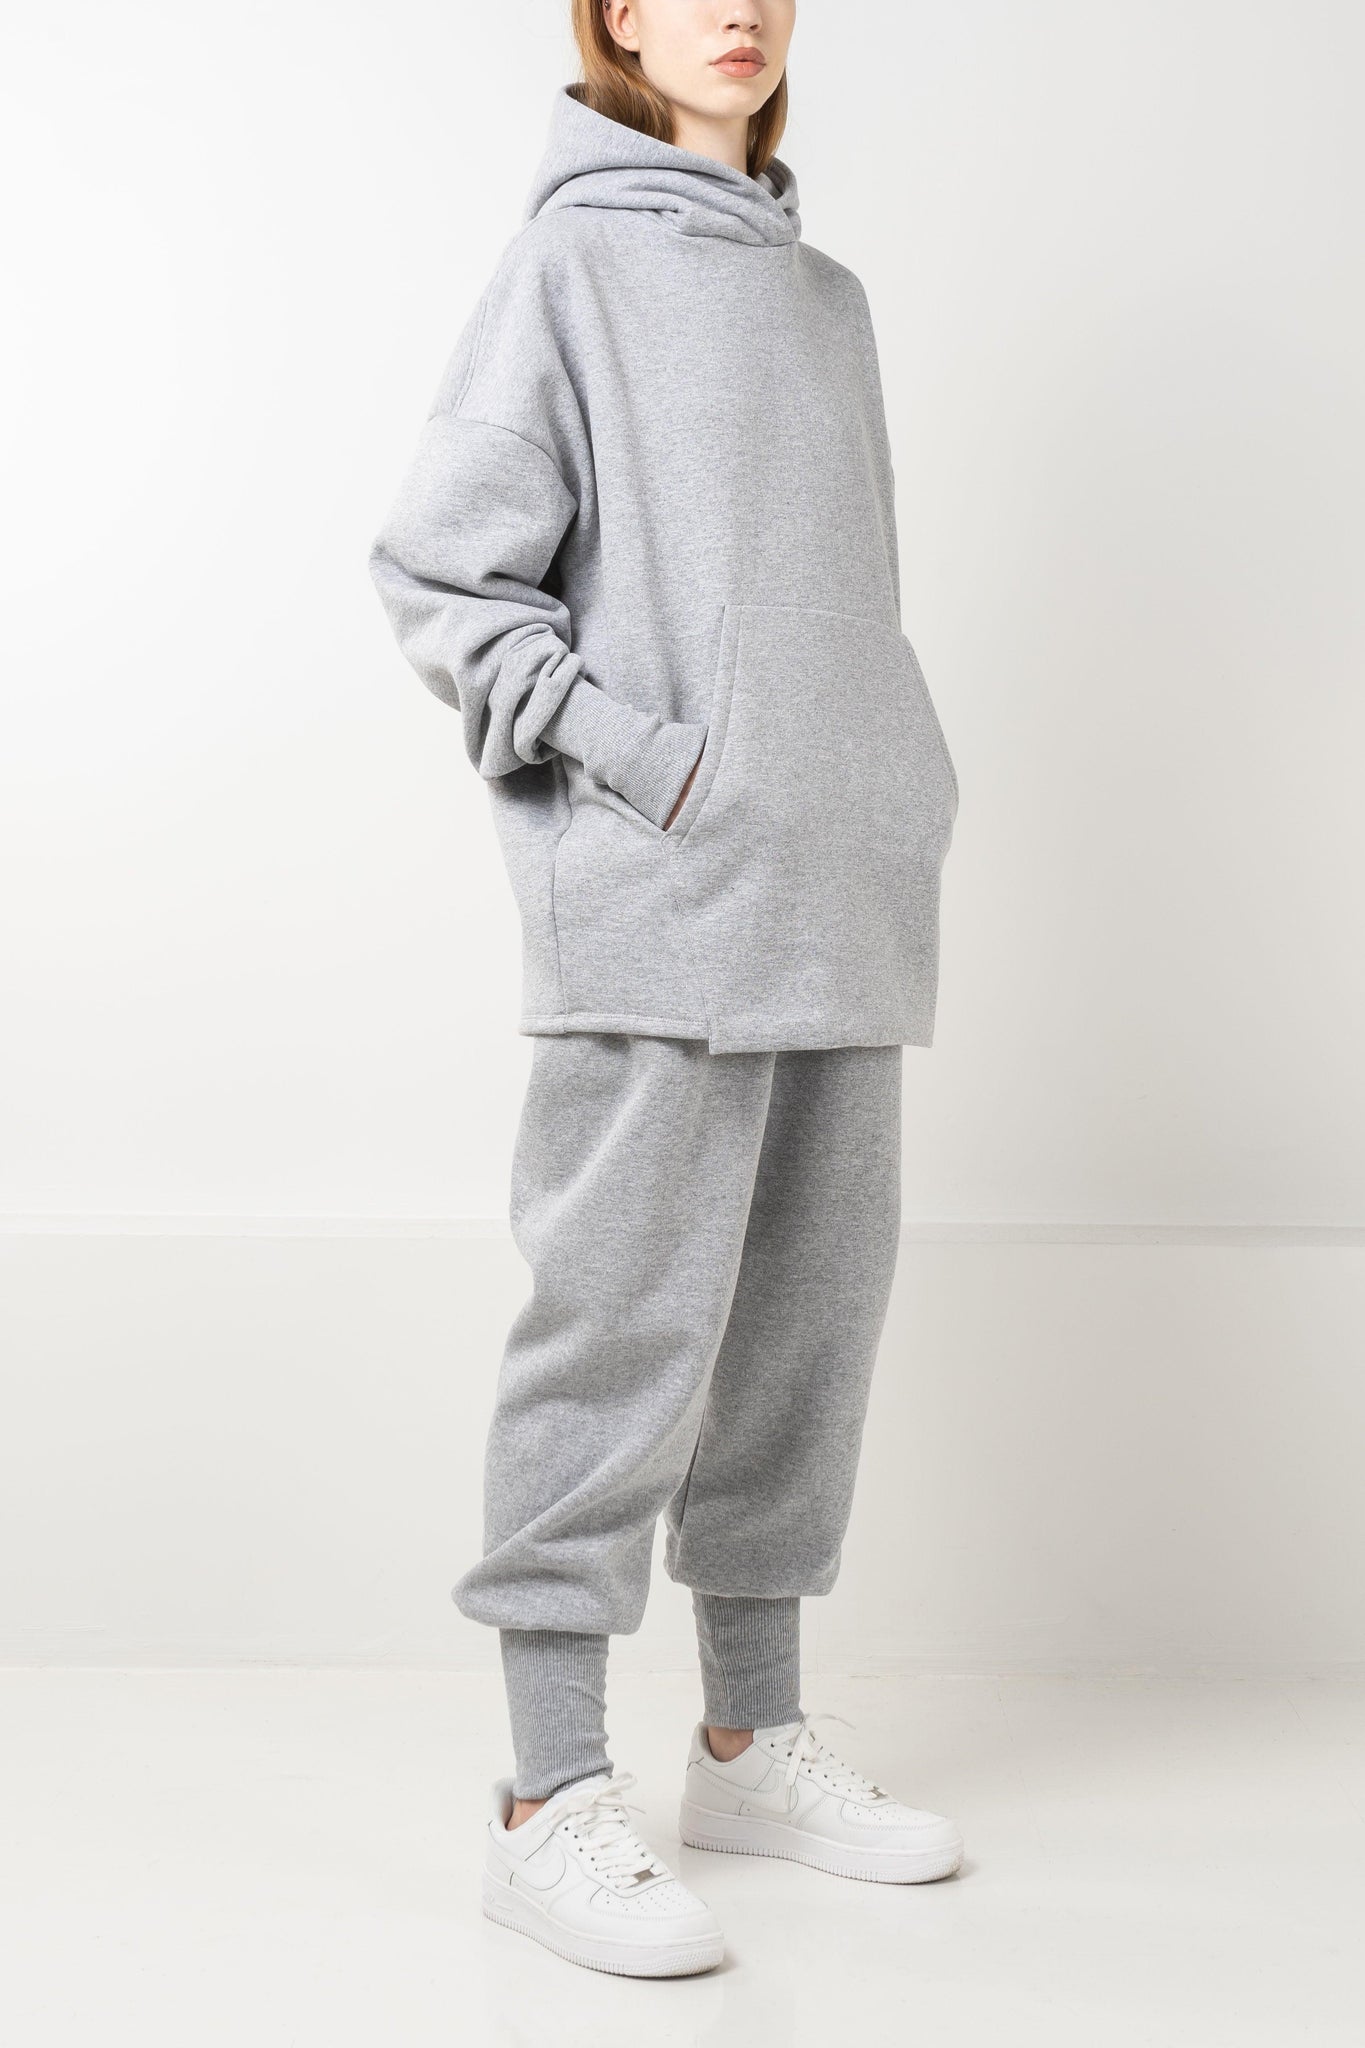 Oversized grey fleece hoodie with drop shoulders and double layered hood.